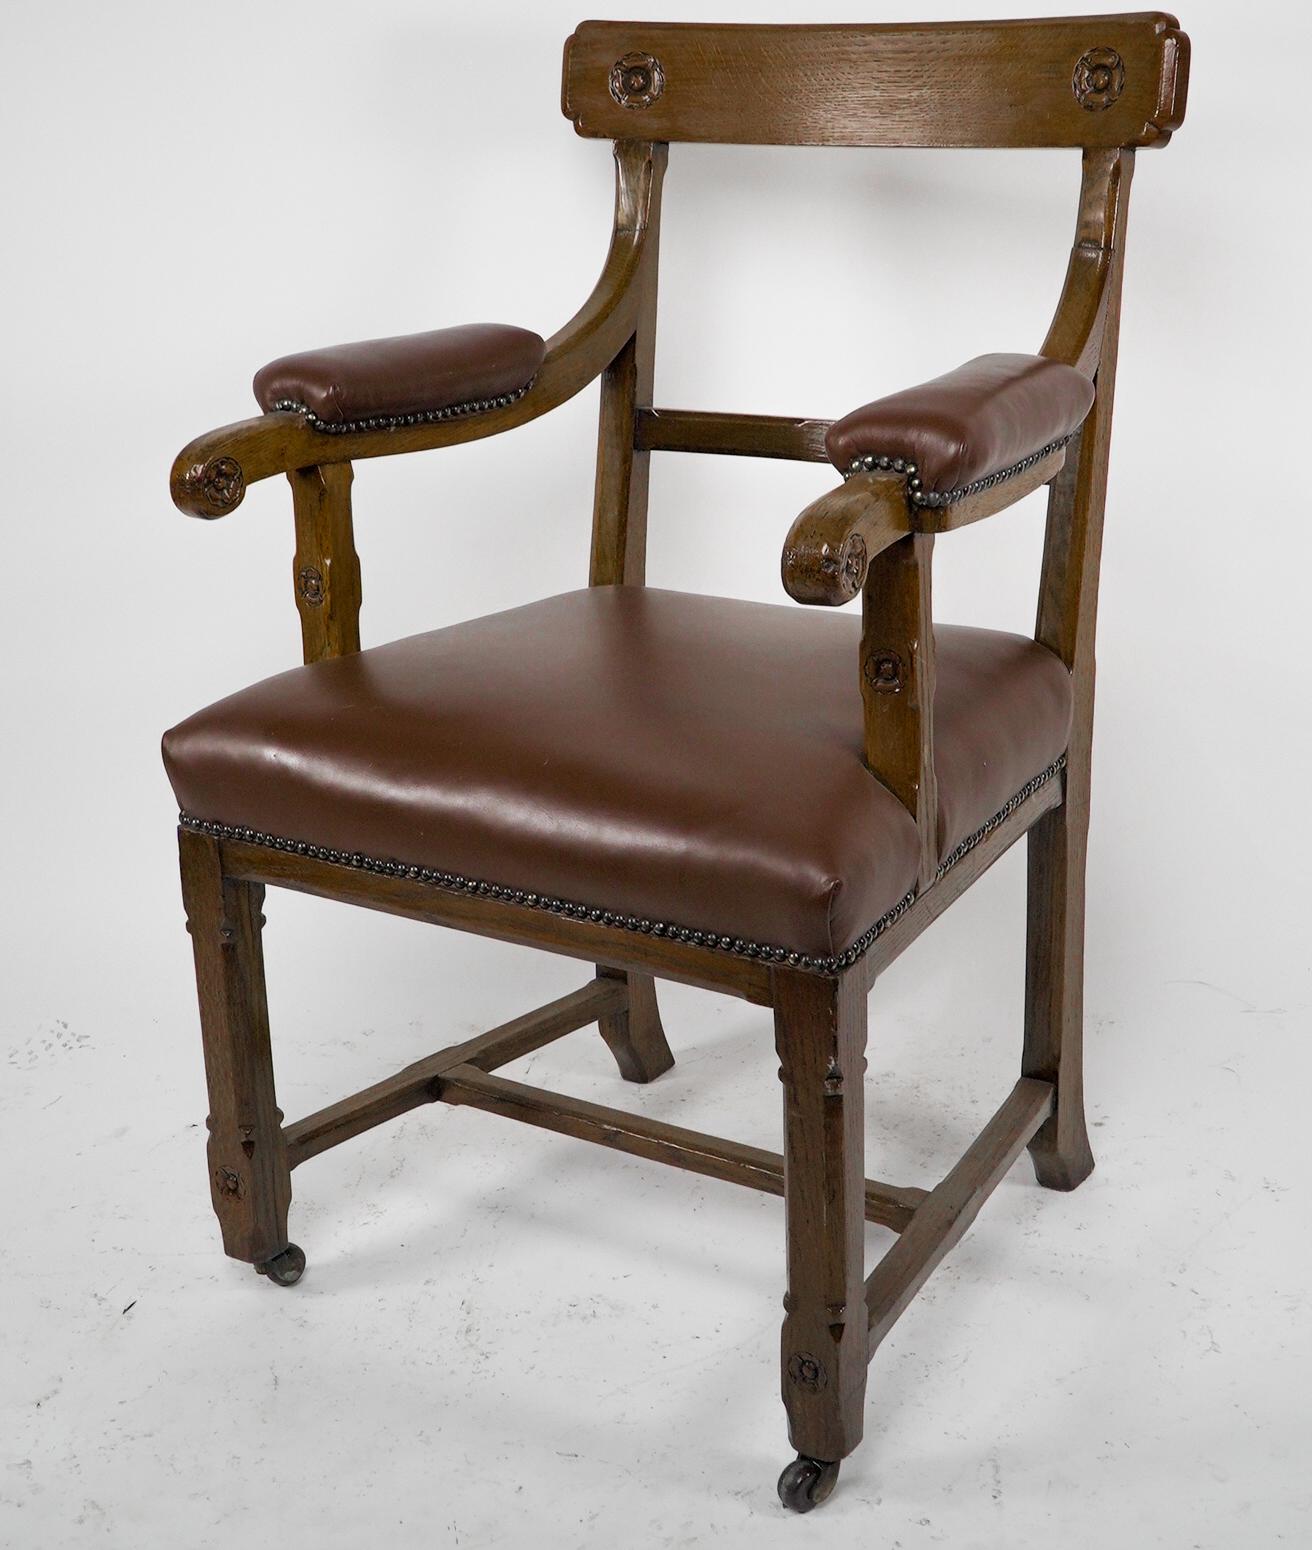 Néo-gothique A W N Pugin, probablement fabriqué par Oak Oak de Lancaster Un fauteuil en chêne de style Revive gothique en vente